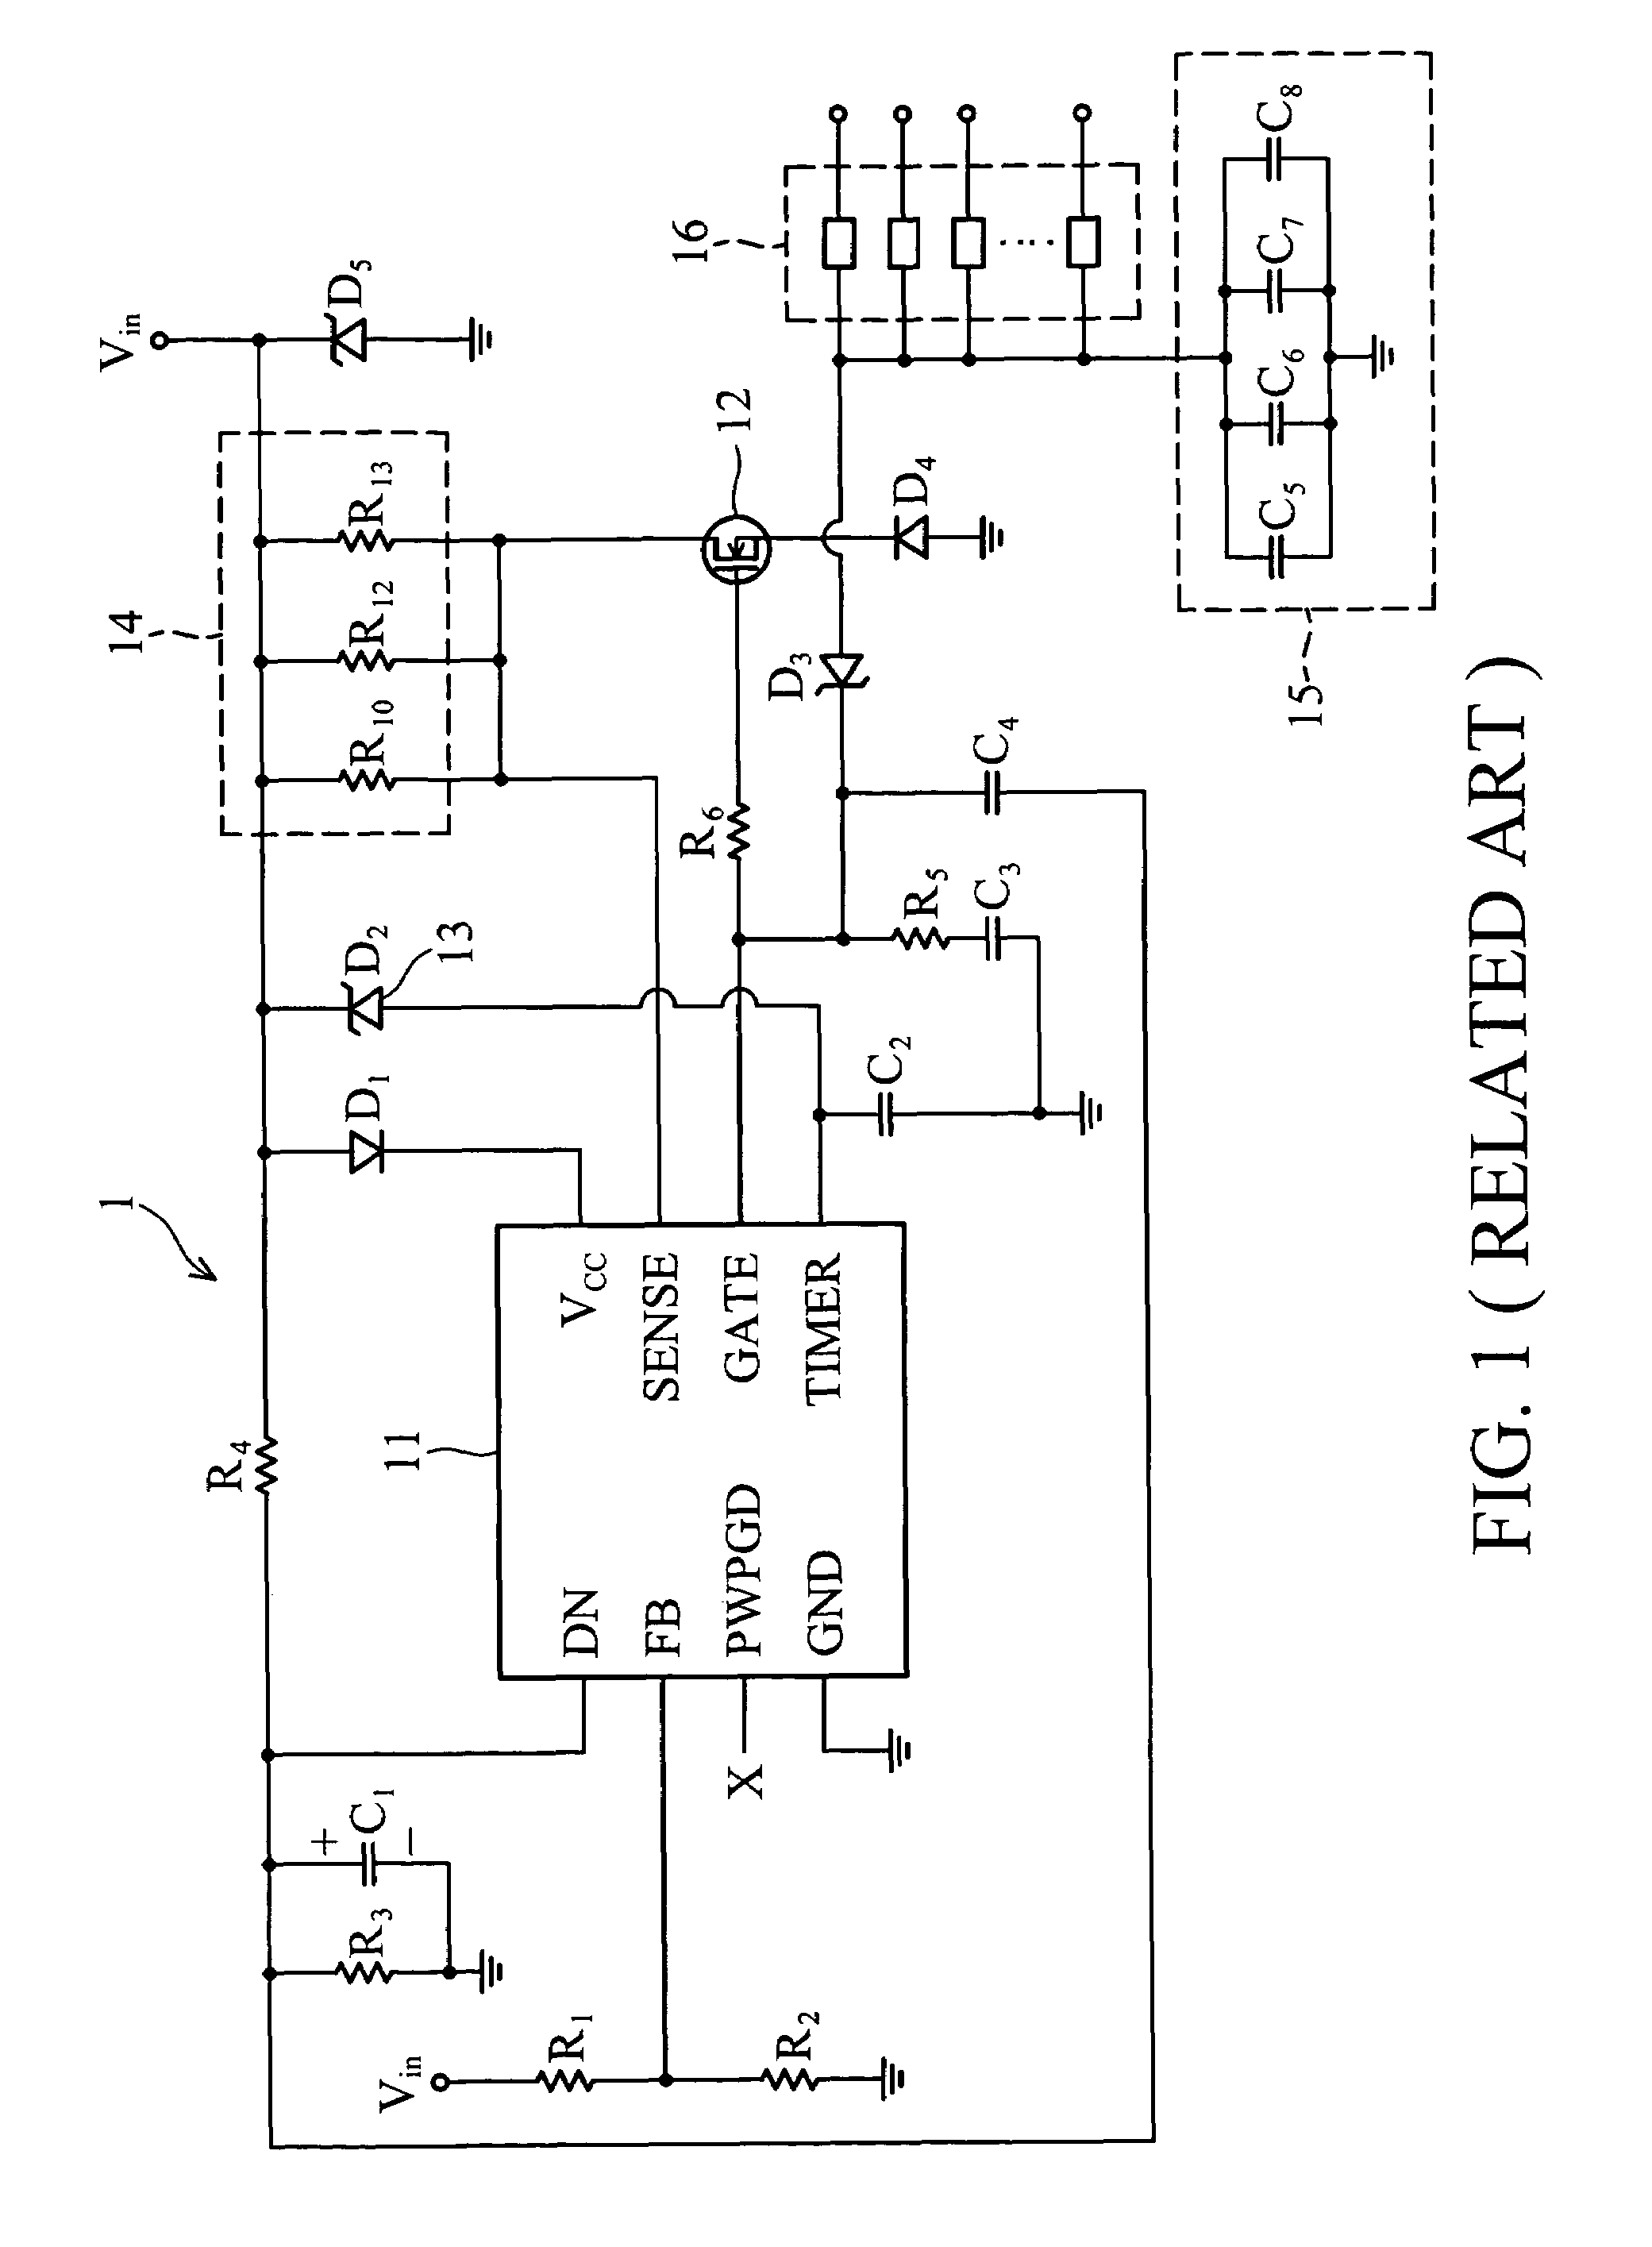 Hot-swap circuit system for fan tray module